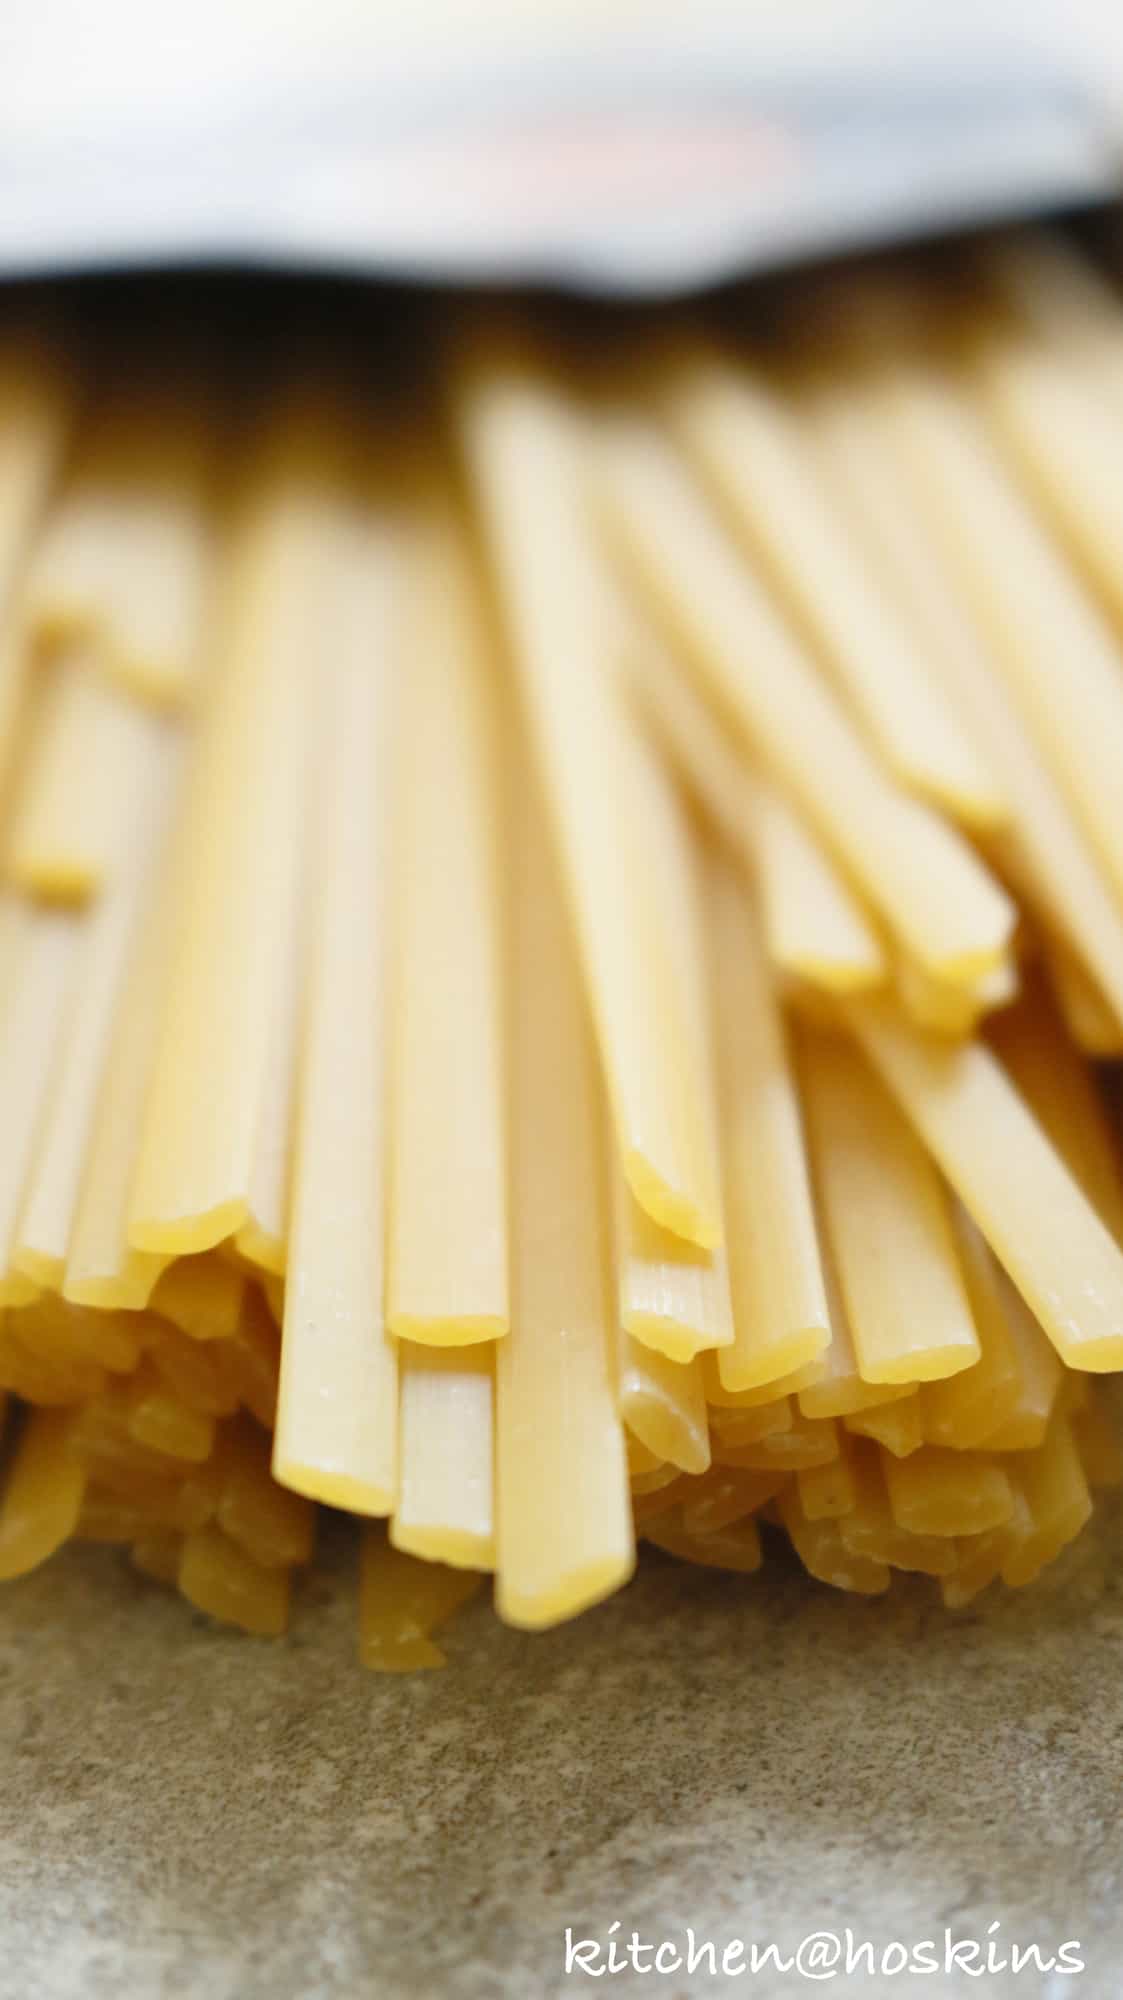 A box of uncooked fettuccini pasta